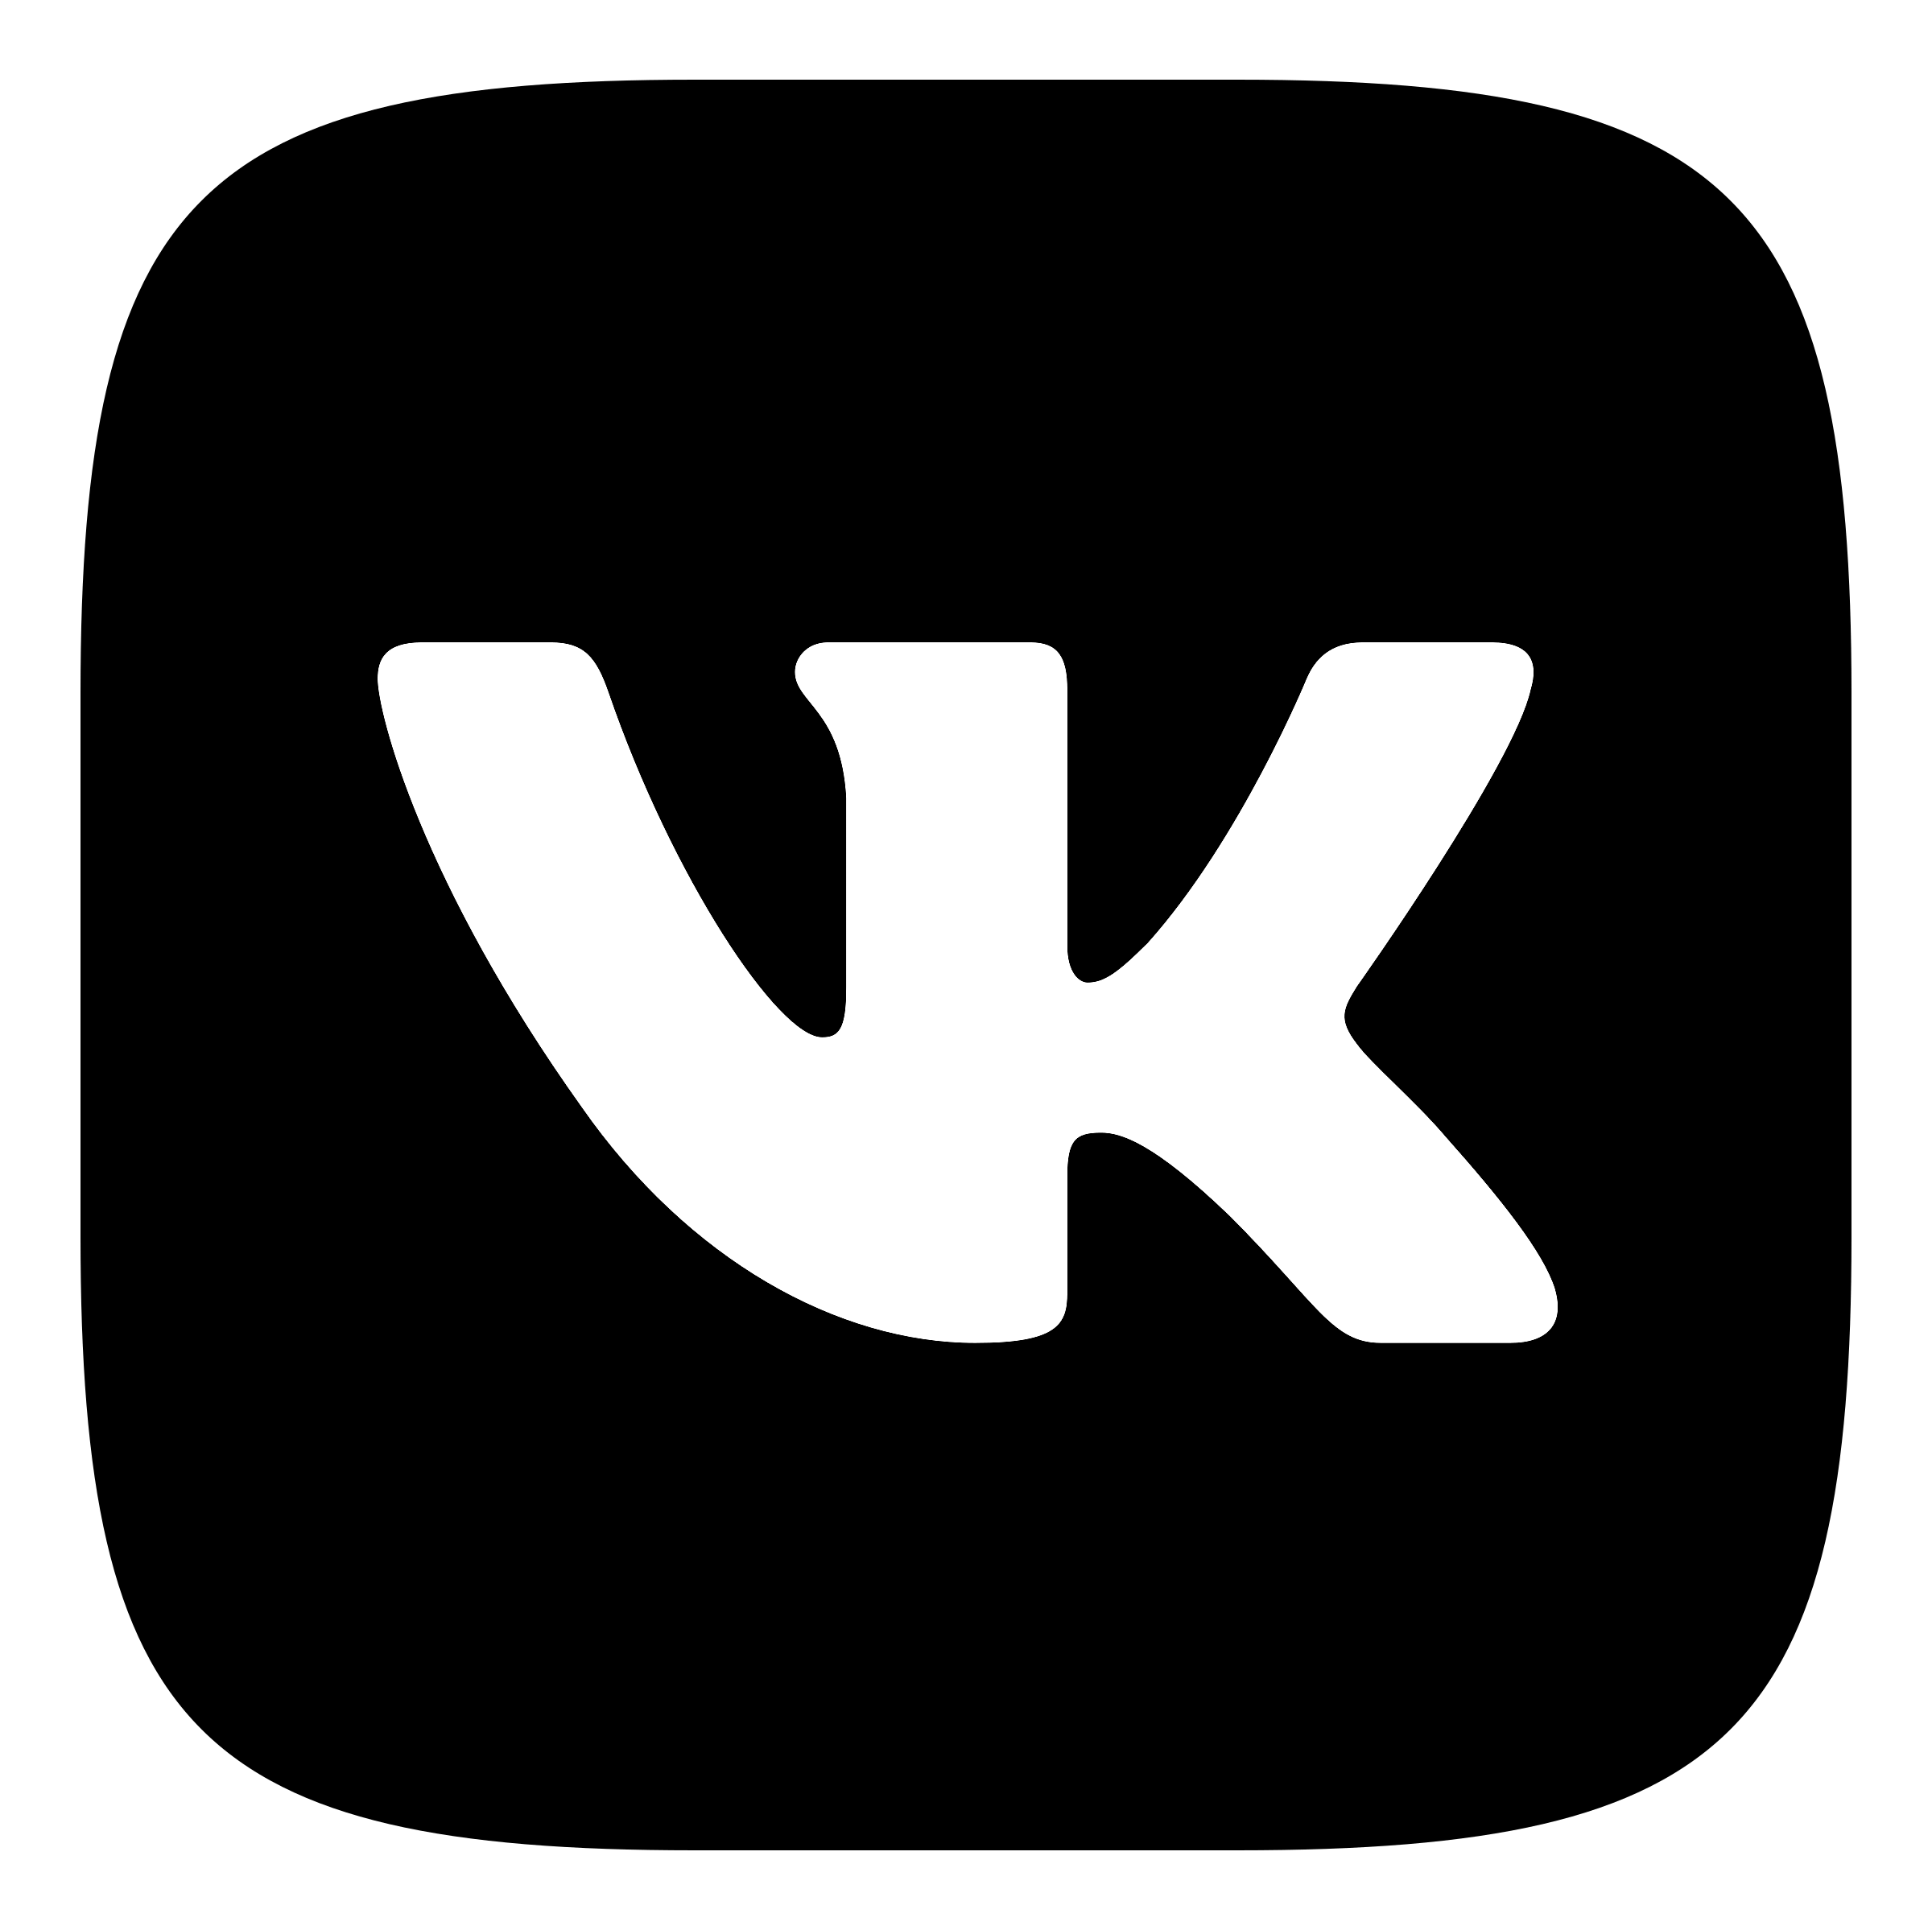 Https teams vk com. ВКОНТАКТЕ логотип. Значок Вики. Иконка ВК черная. Ык.